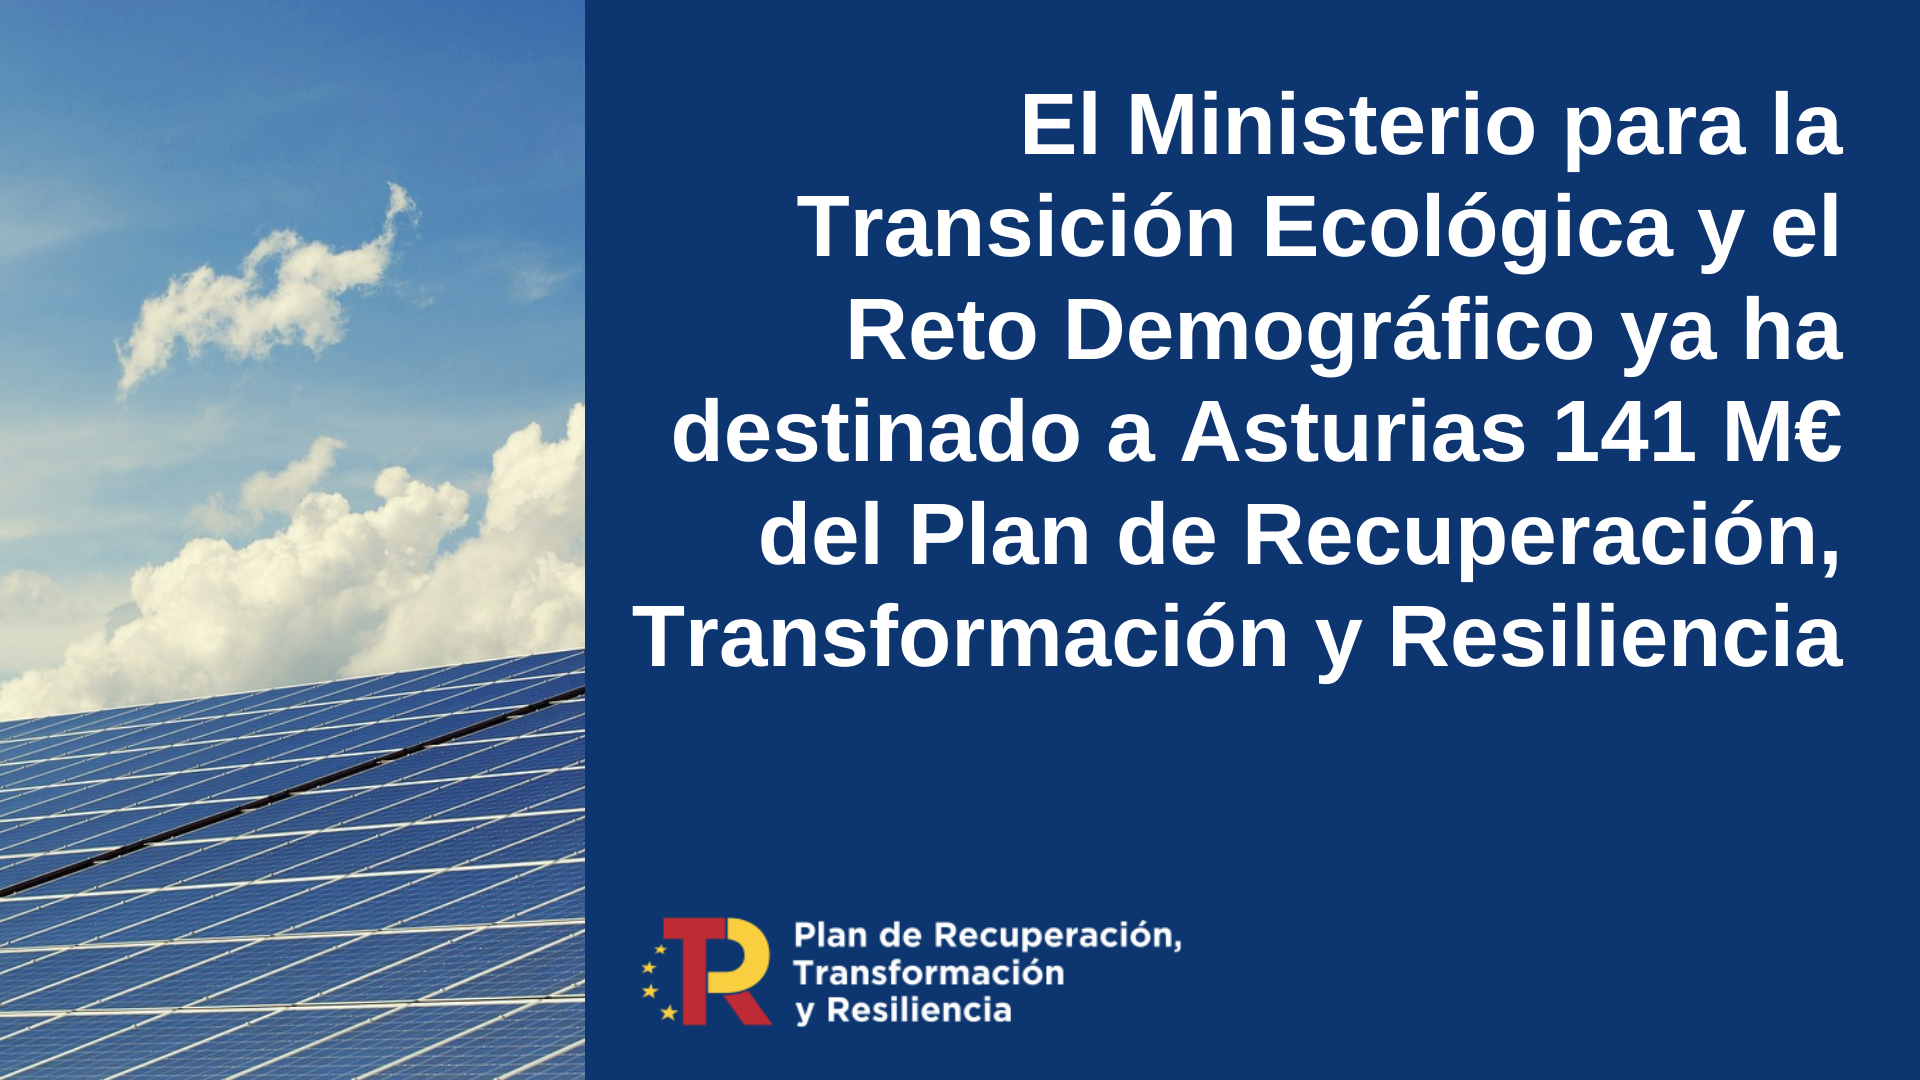 El Ministerio para la Transición Ecológica ya ha distribuido en Asturias 141 millones de euros del Plan de Recuperación